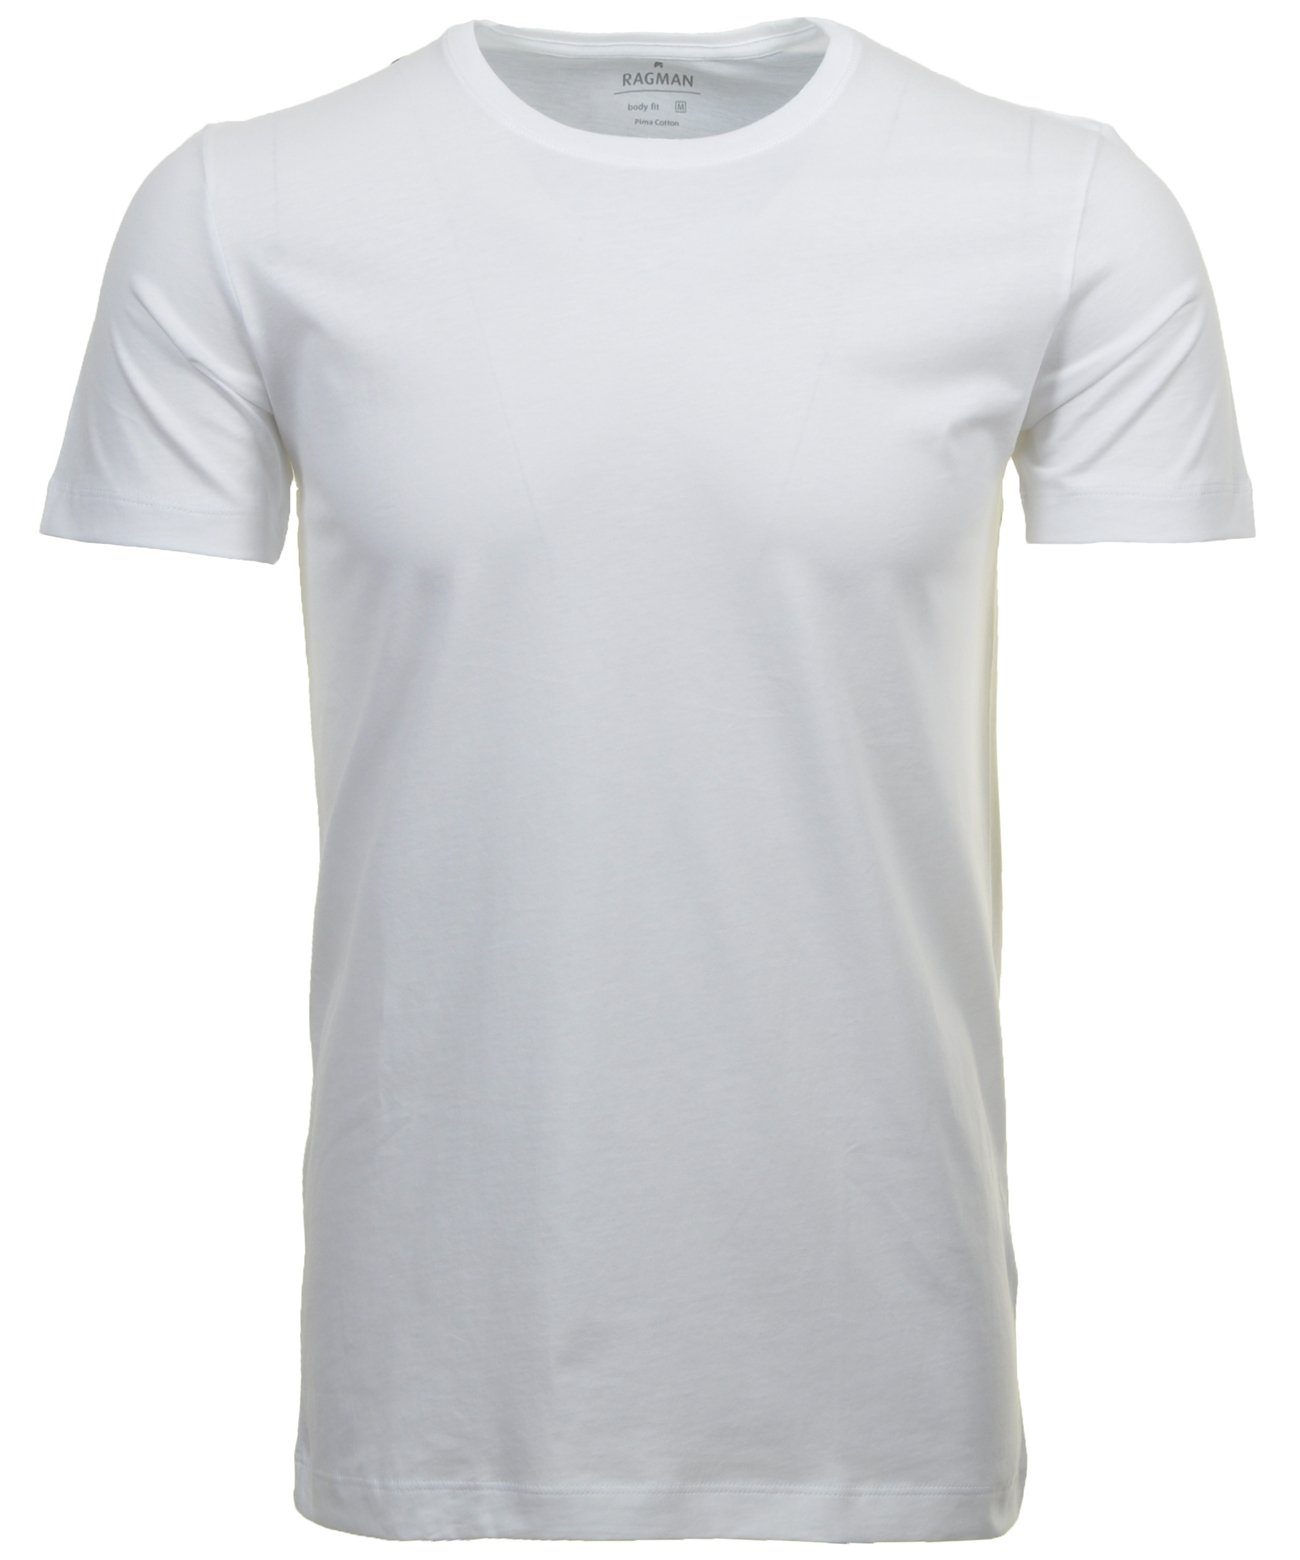 RAGMAN T-Shirt (Packung) Weiss